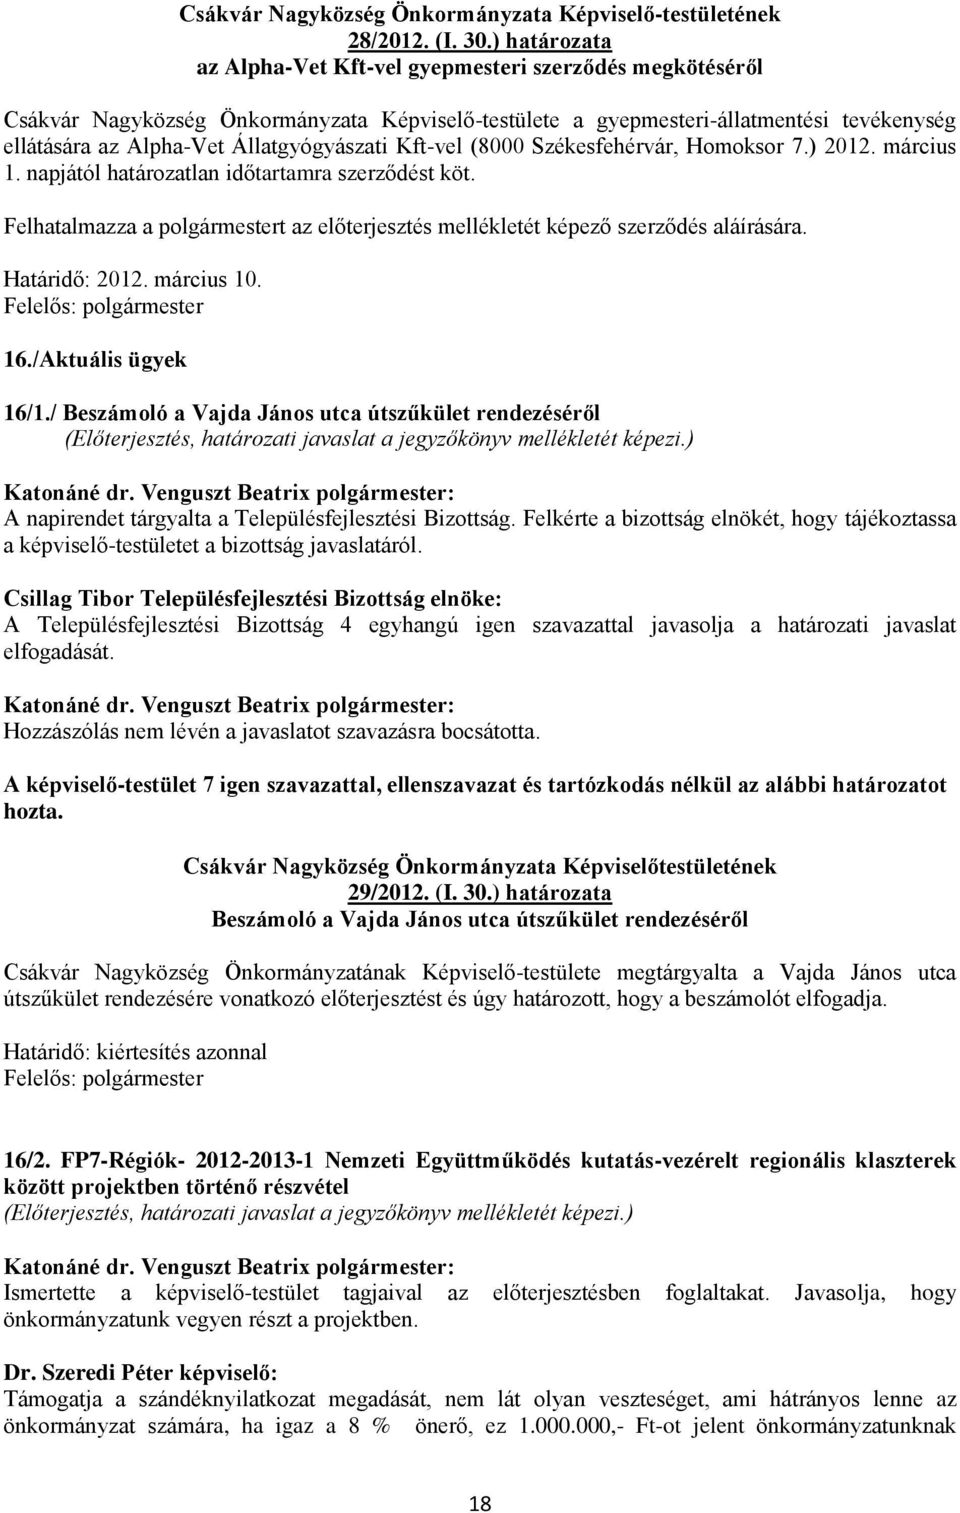 Állatgyógyászati Kft-vel (8000 Székesfehérvár, Homoksor 7.) 2012. március 1. napjától határozatlan időtartamra szerződést köt.